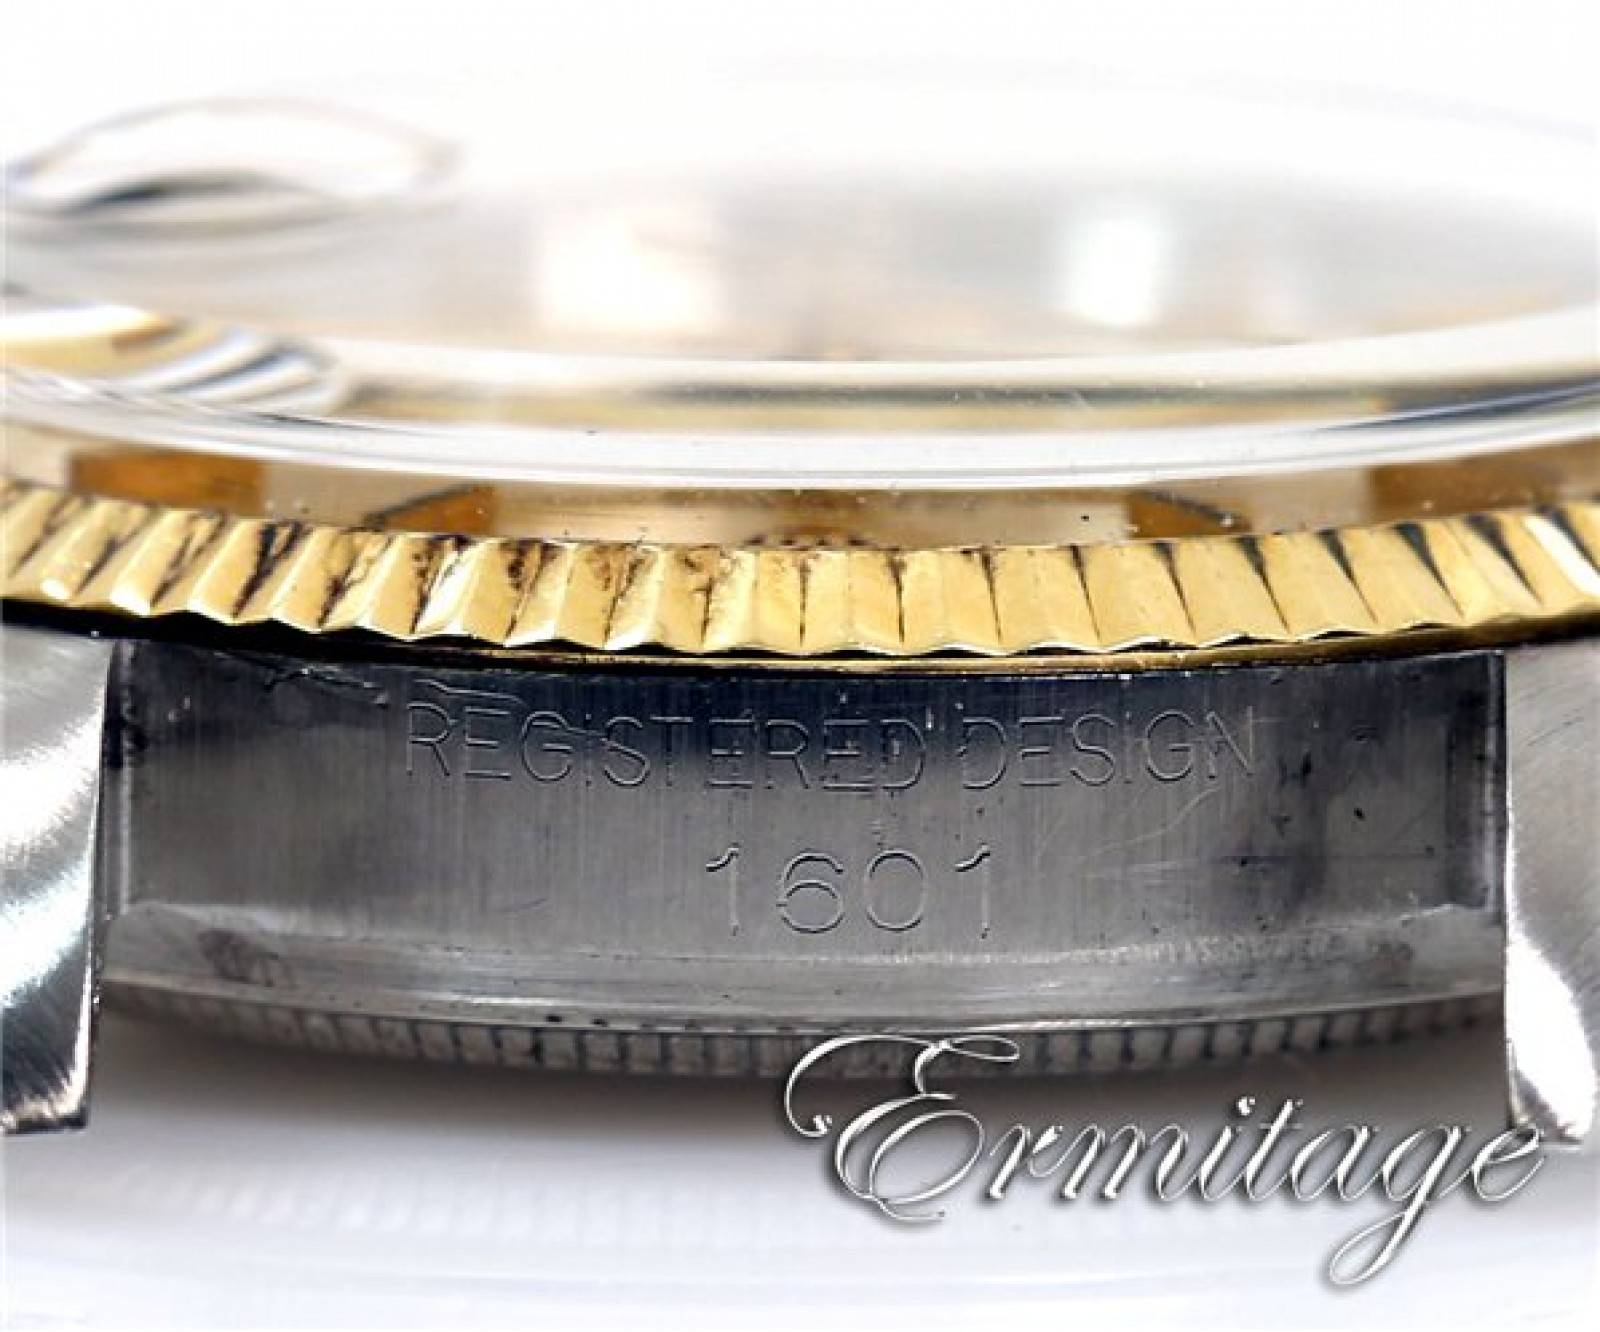 Vintage Rare Rolex Datejust 1601 Gold & Steel Year Circa 1969